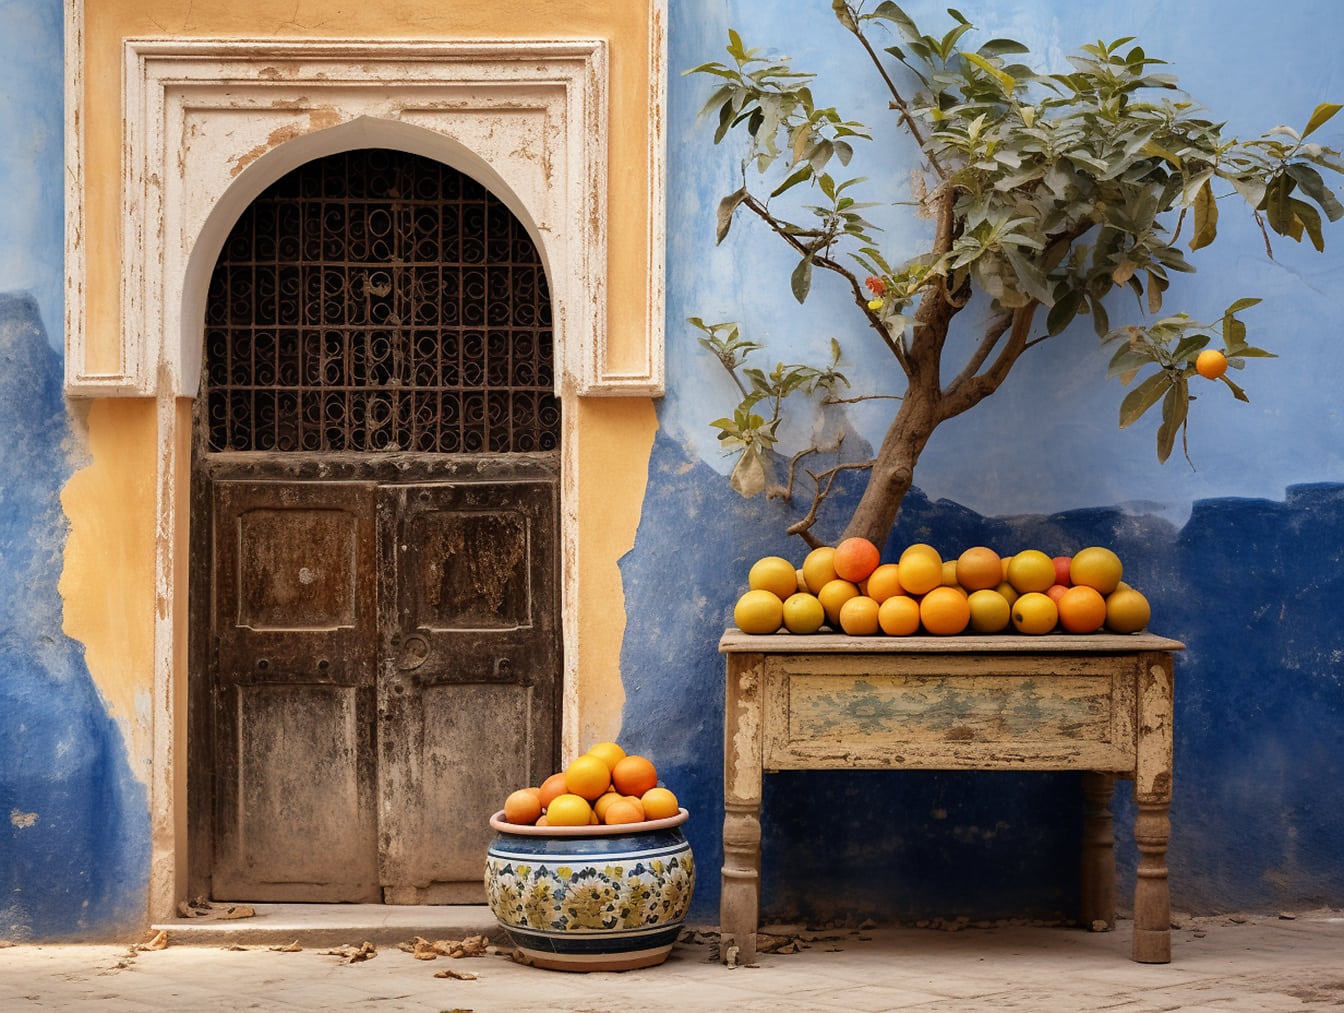 Stôl s pomarančmi pred modrou stenou v Maroku